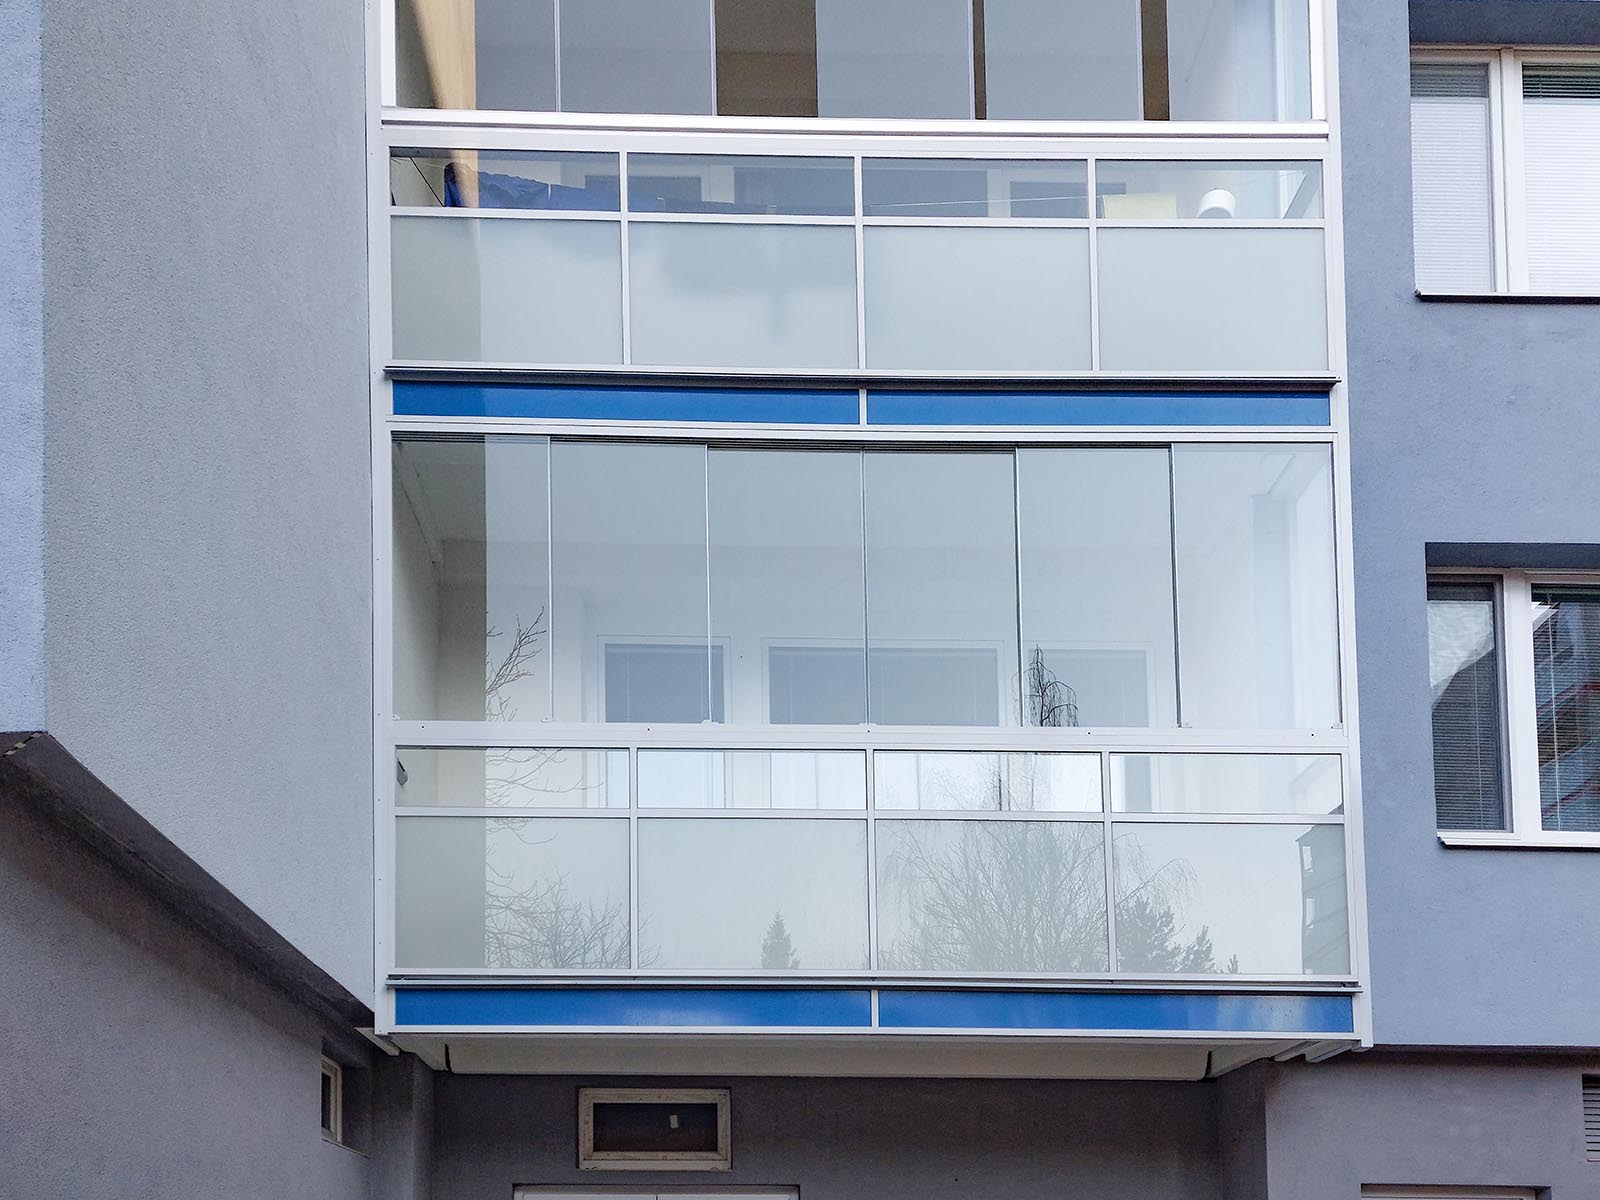 Zábradlí prodlouženého balkonu s průhledítkem (lepší prostupnost světla)